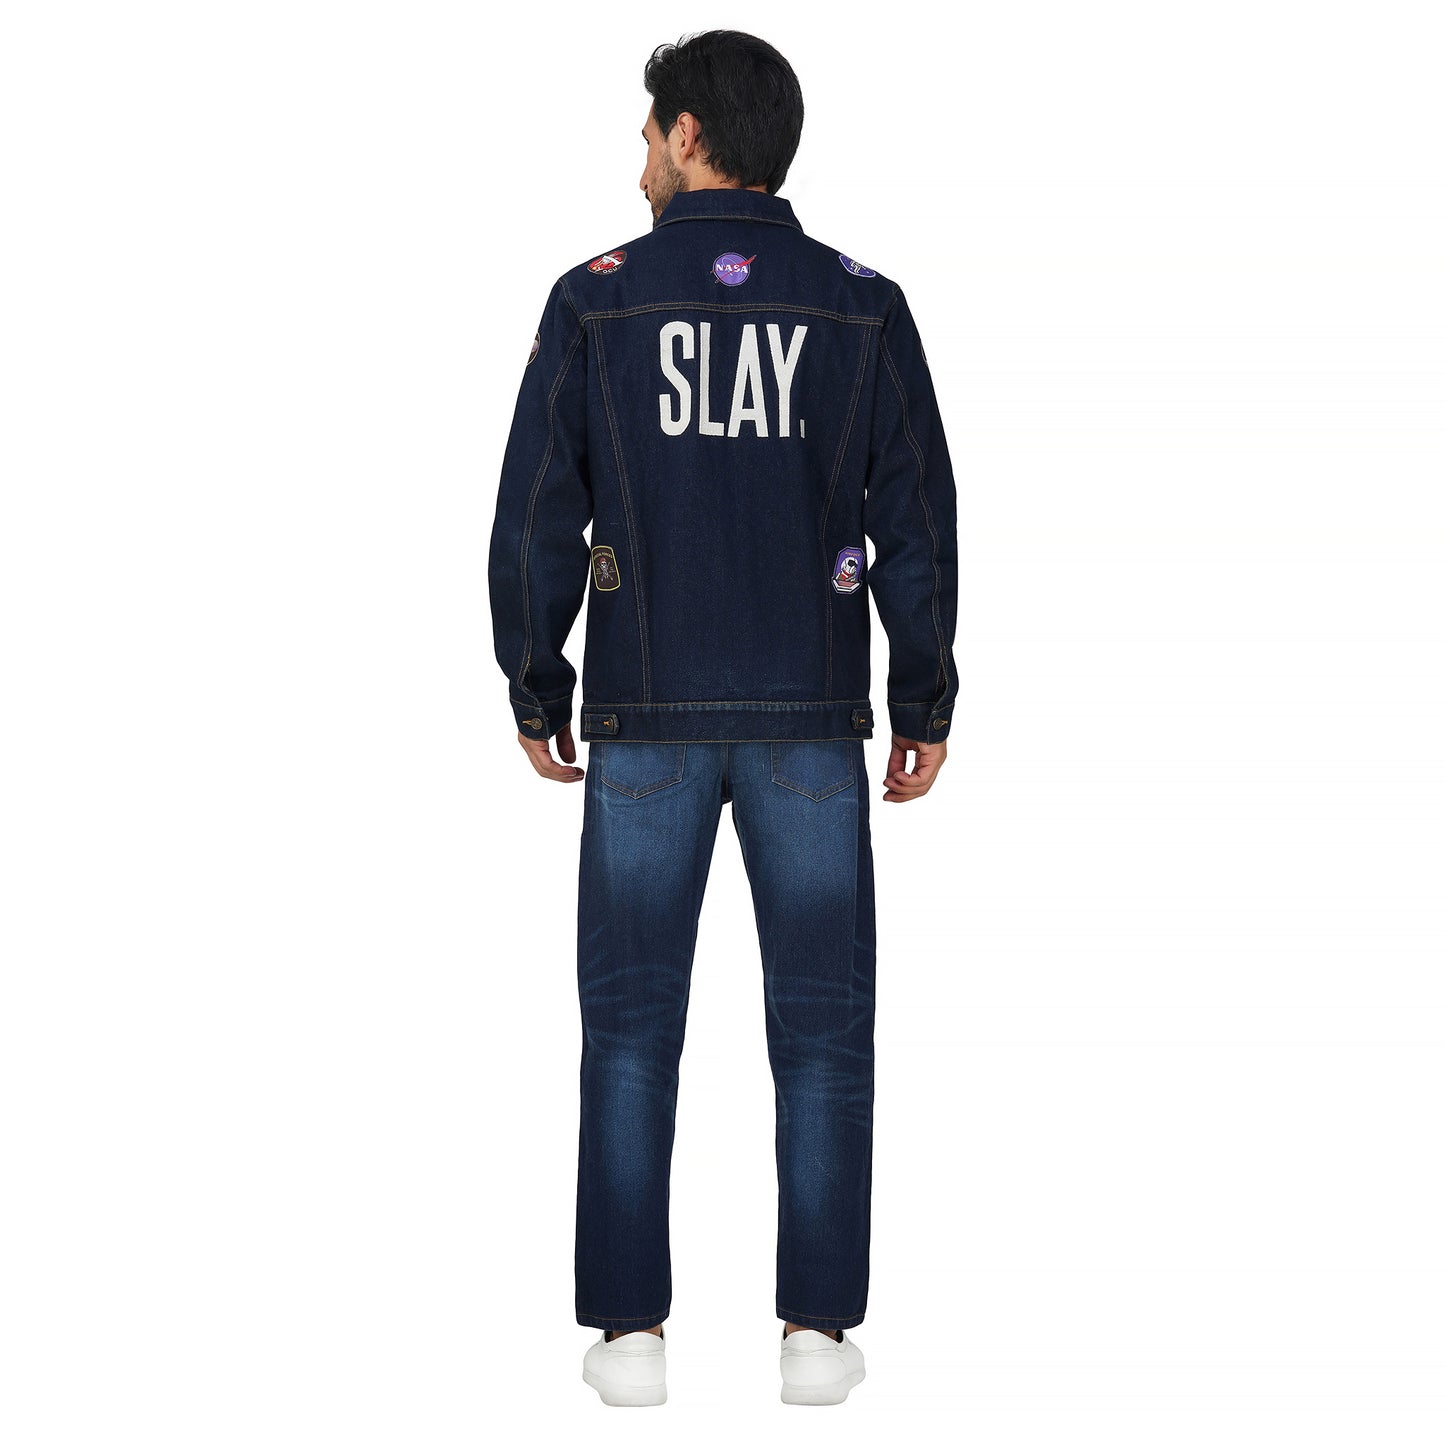 SLAY. Men's Patchwork Embroidered Navy Blue Vintage Button-Down Denim Biker Jacket & Jeans Co ord Set